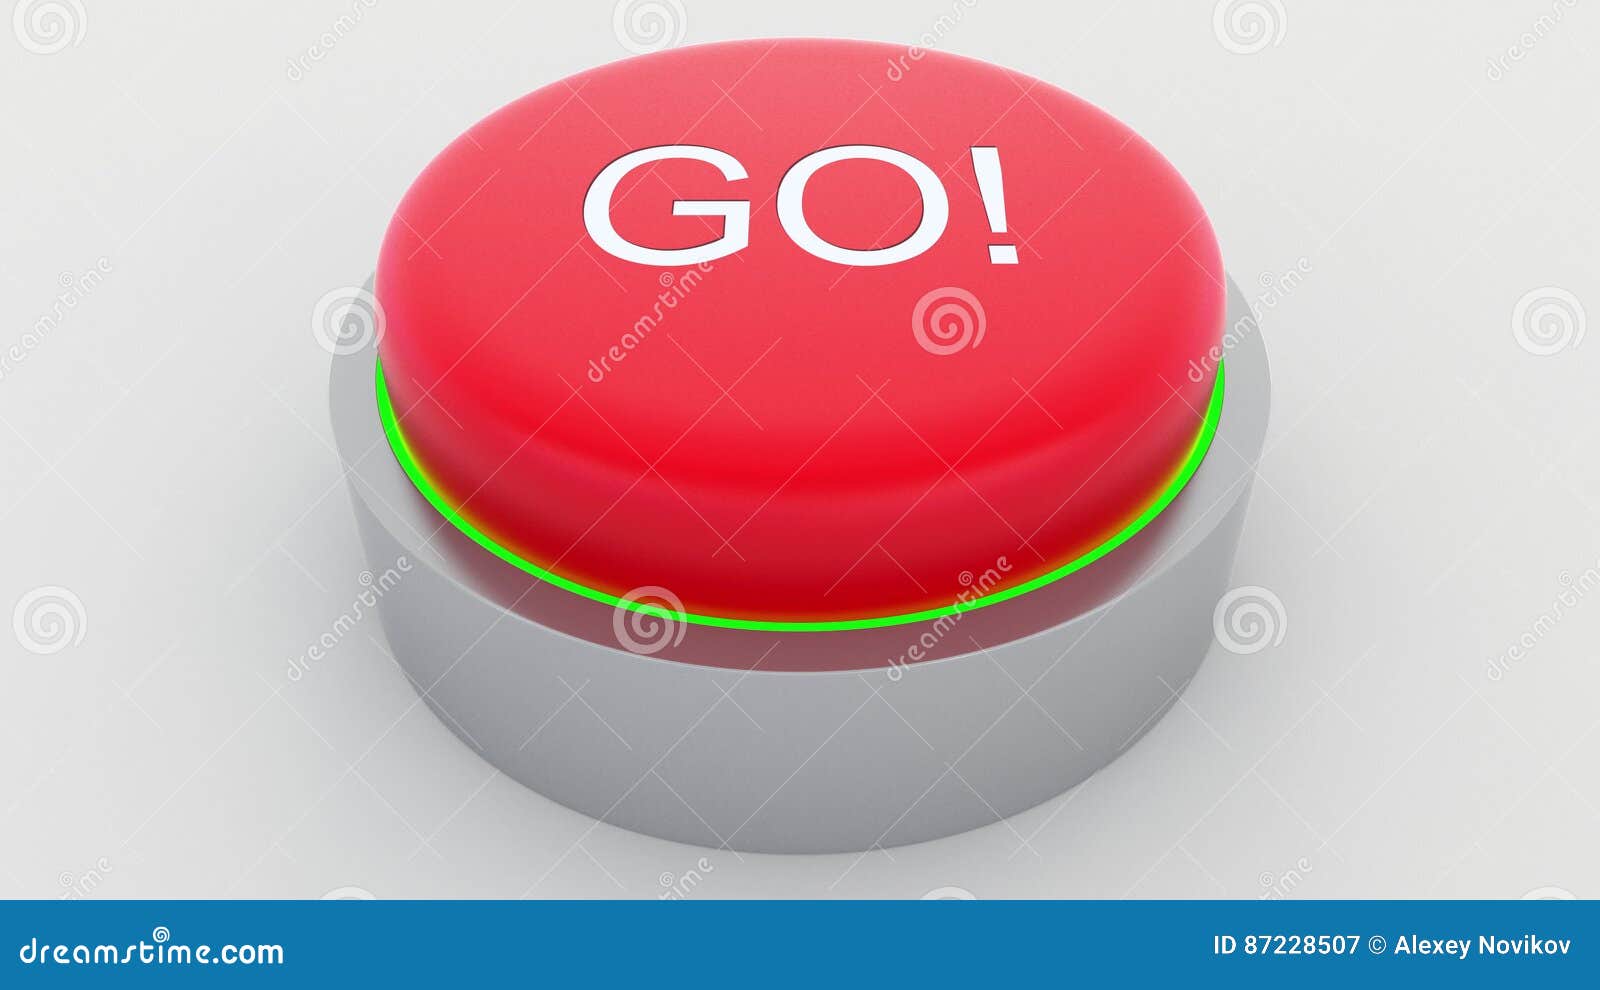 Красная кнопка не нажимать на прозрачном фоне. Красная кнопка не нажимать. Картинка кнопки красная синяя зеленая.